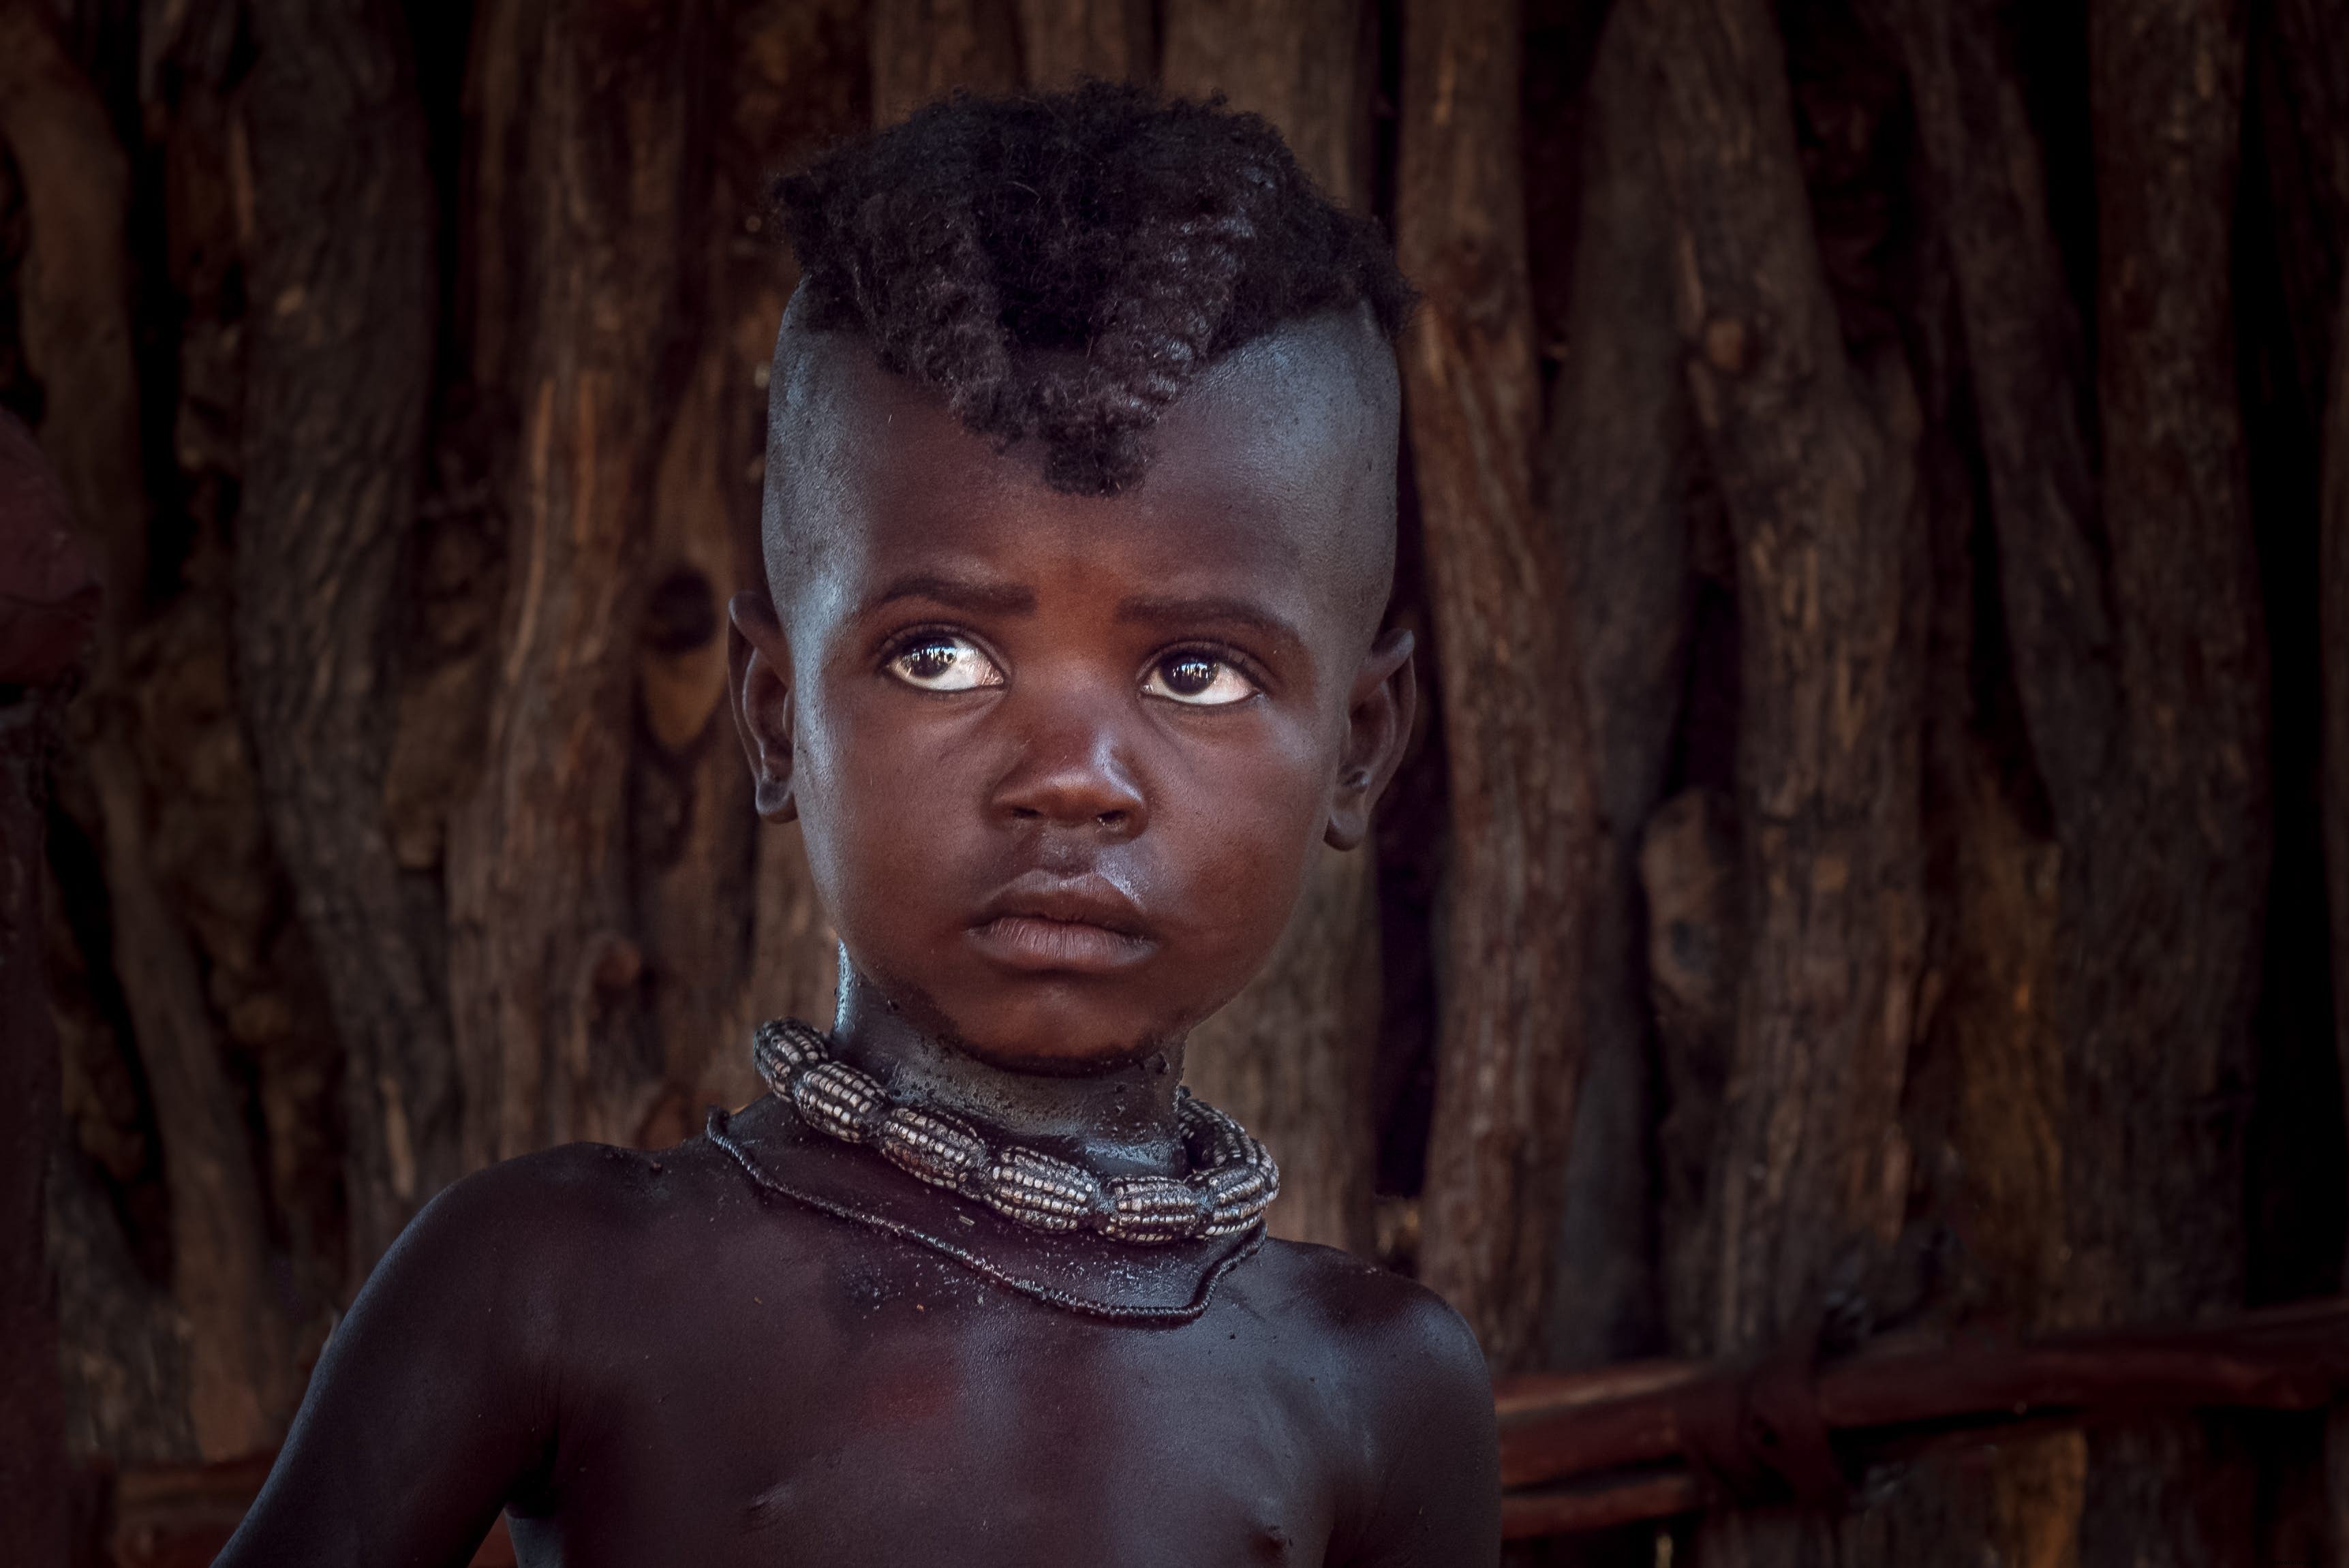 COVIDの最前線の看護師が撮影したアフリカの遠隔部族の素晴らしい写真をご覧ください 